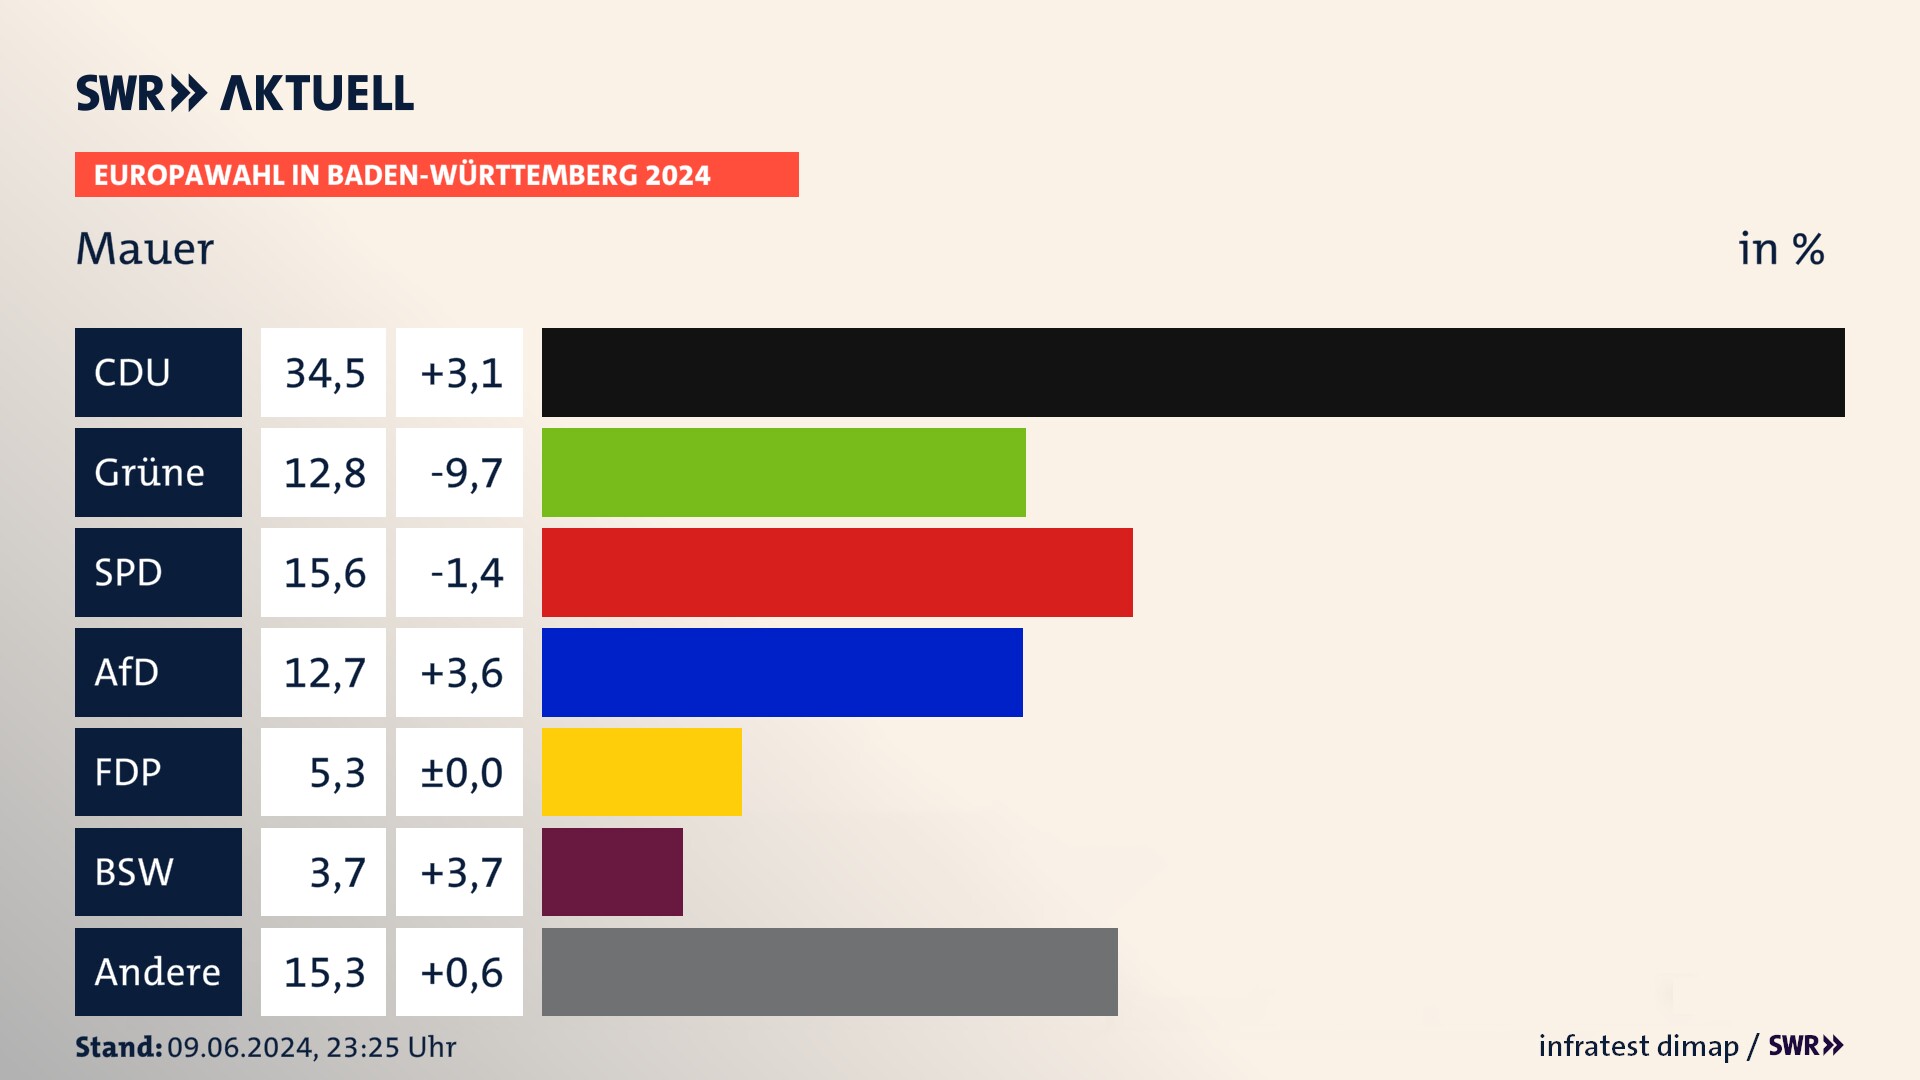 Europawahl 2024 Endergebnis Zweitstimme für Mauer. In Mauer erzielt die CDU 34,5 Prozent der gültigen  Stimmen. Die Grünen landen bei 12,8 Prozent. Die SPD erreicht 15,6 Prozent. Die AfD kommt auf 12,7 Prozent. Die FDP landet bei 5,3 Prozent. Die 2019 nicht angetretene Partei BSW bekommt 3,7 Prozent.